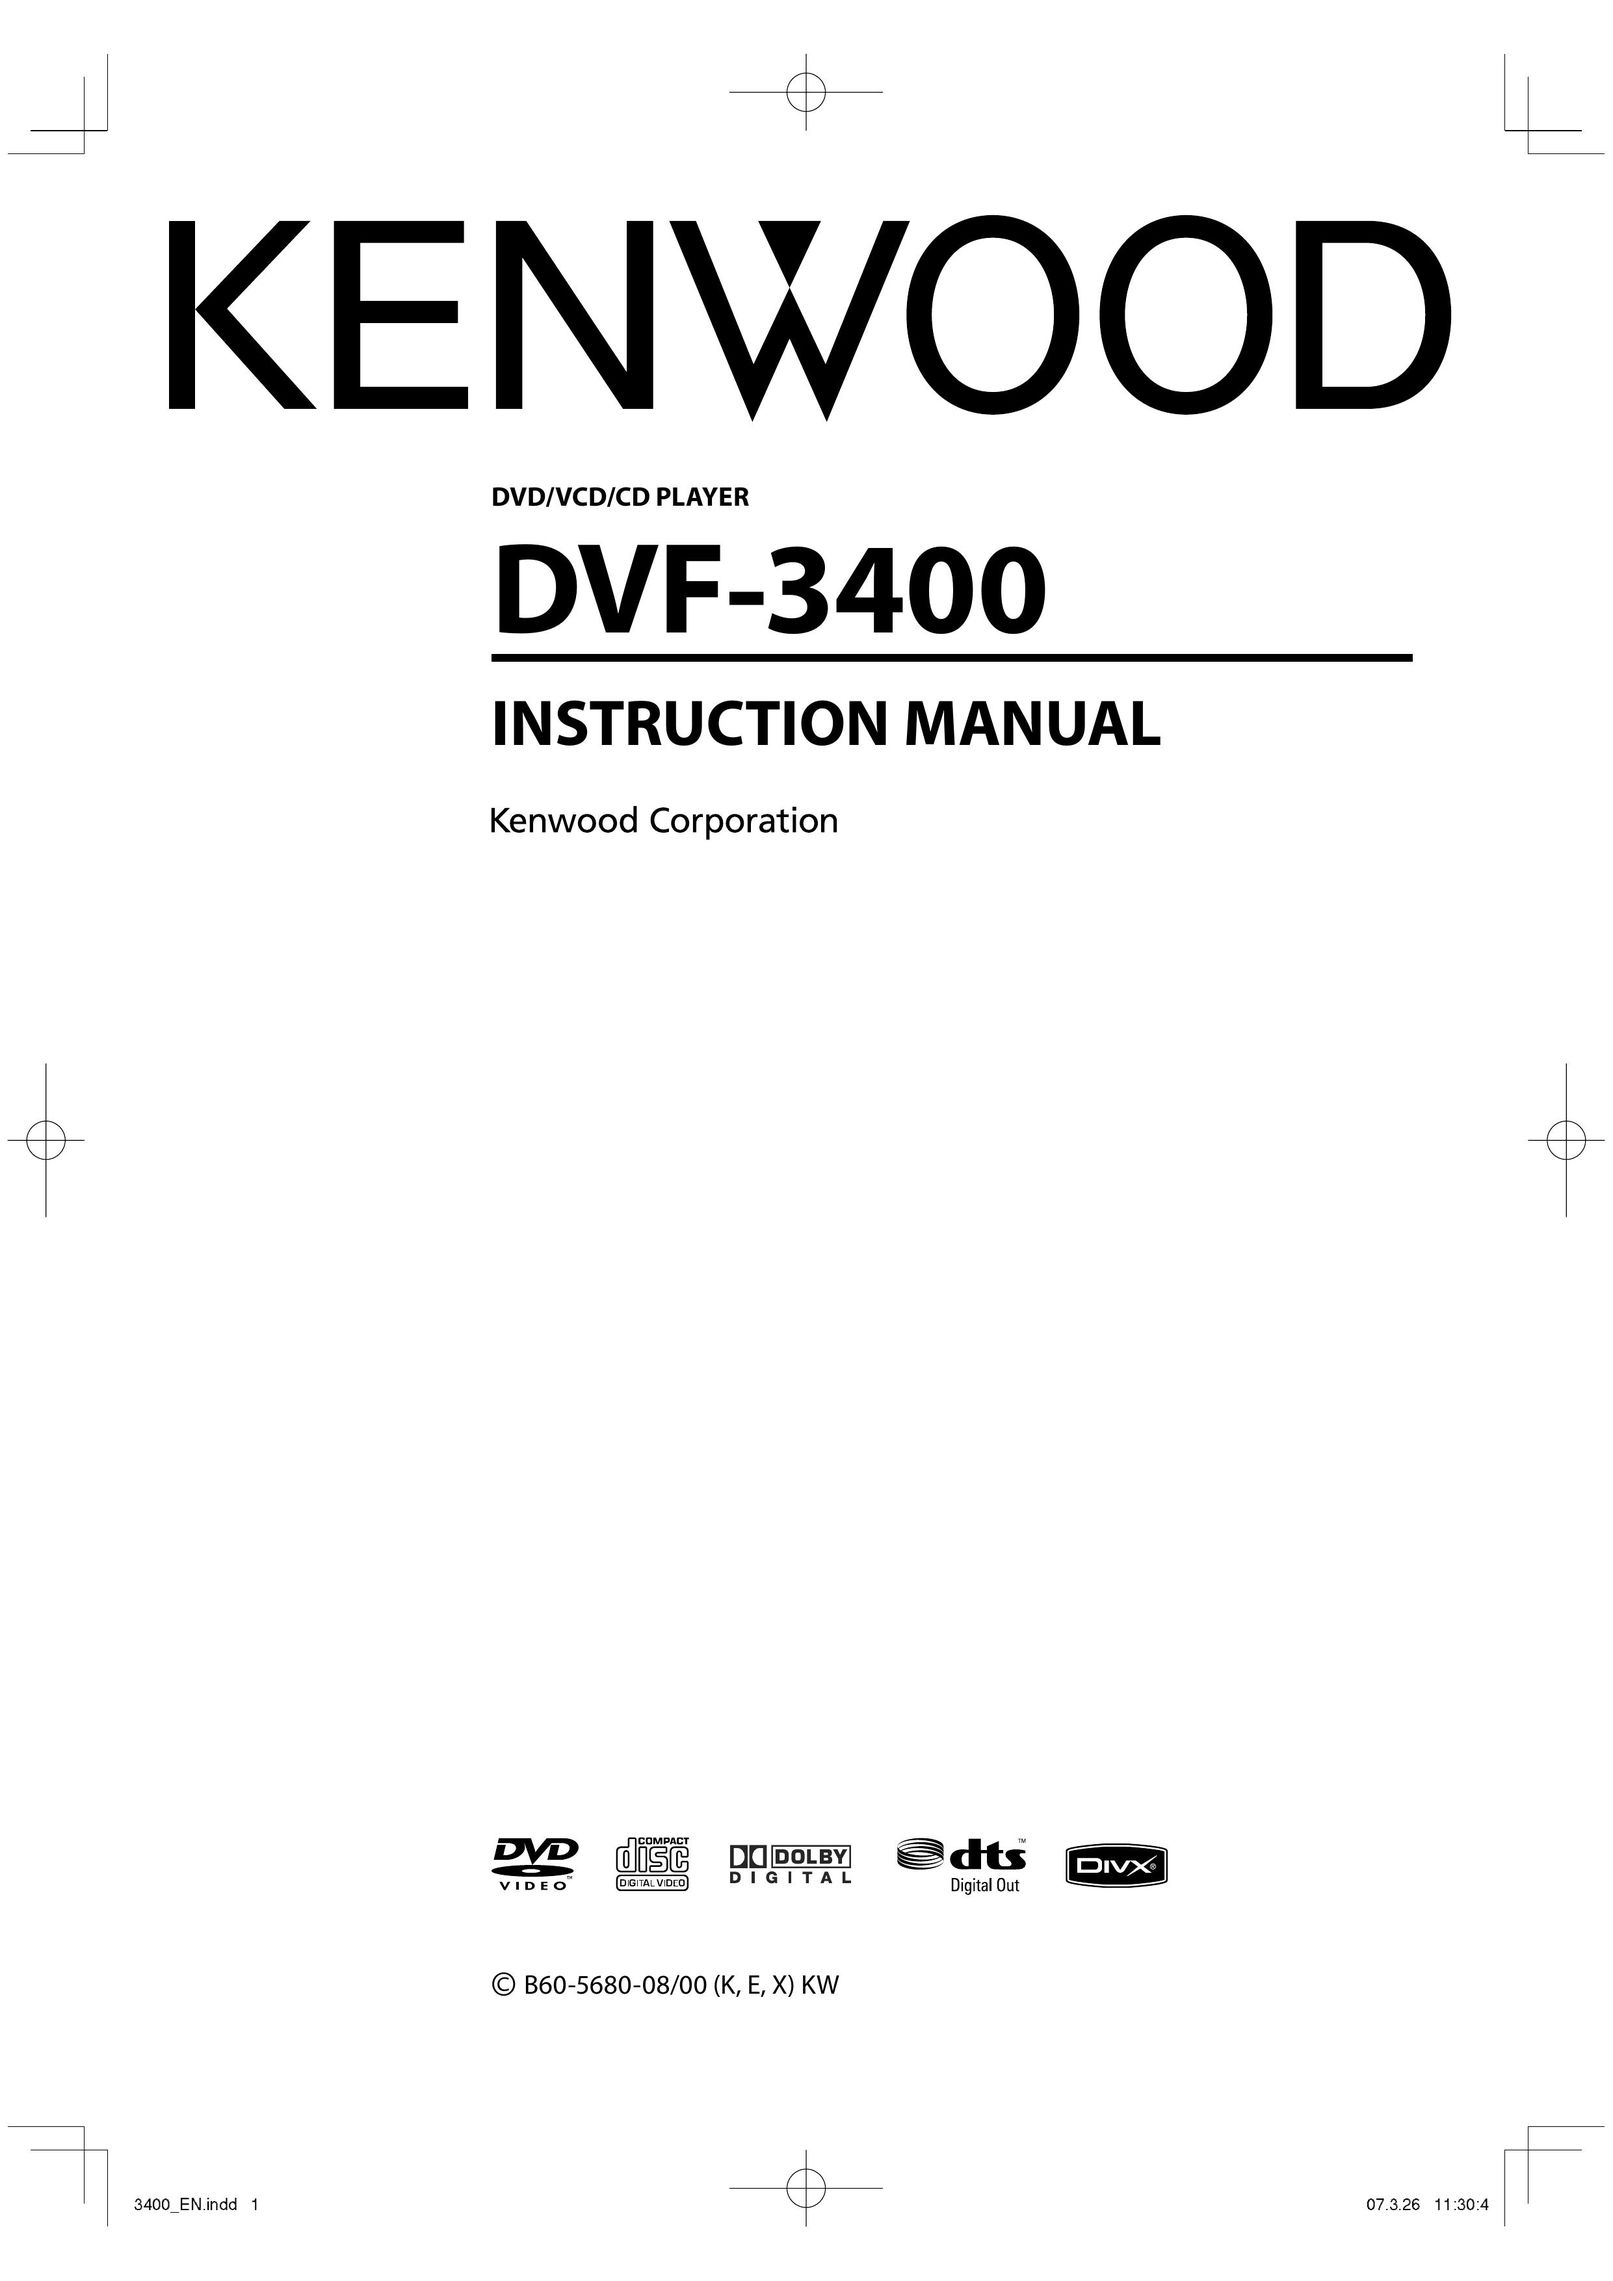 Kenwood DVF-3400 DVD Player User Manual